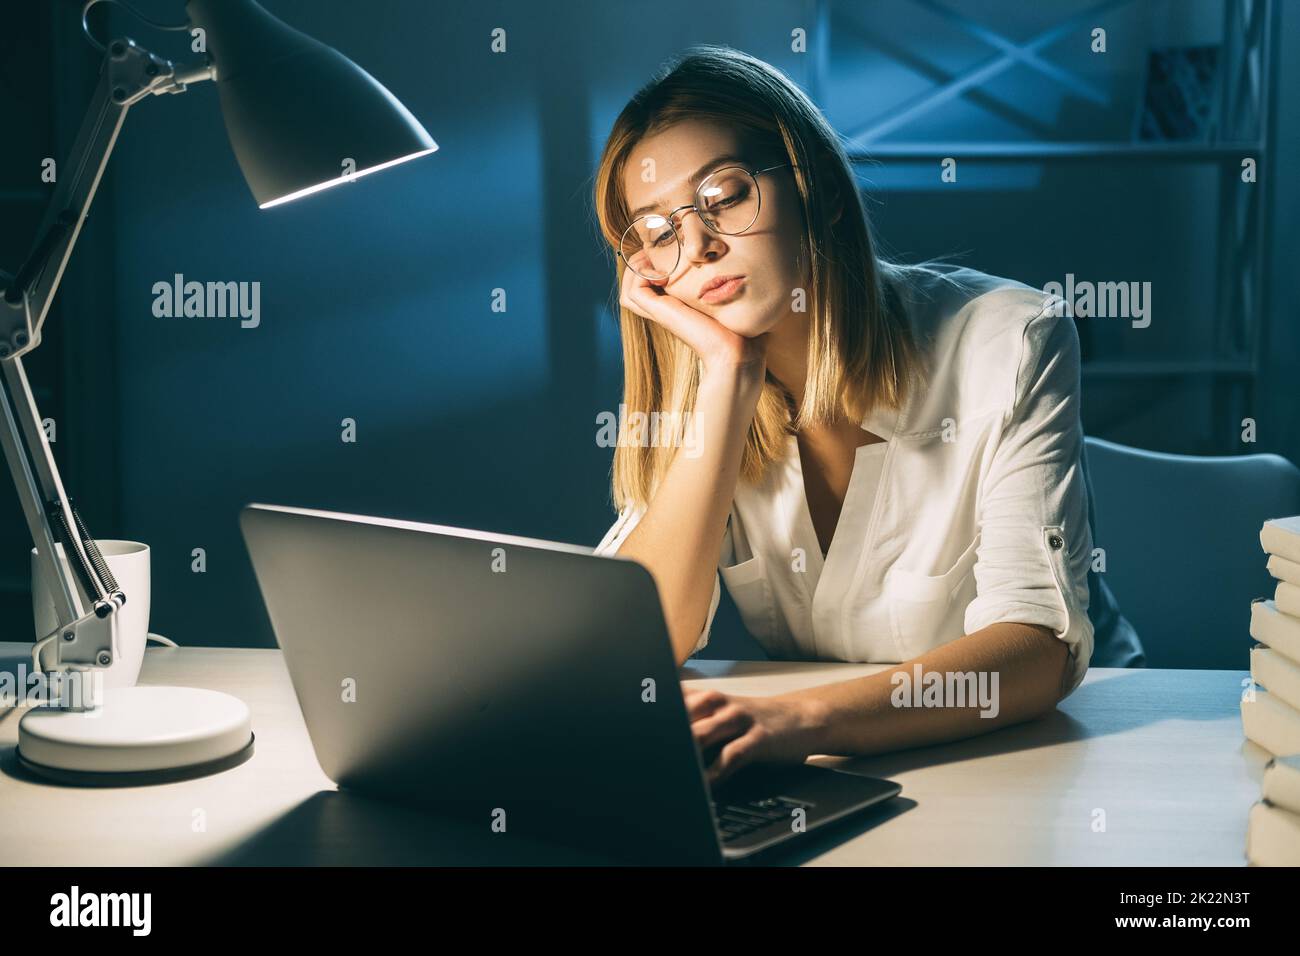 Travailler à domicile. Verrouillez vos activités. Femme fatiguée et ennuyeuse travaillant sur un ordinateur portable dans un espace de travail sombre Banque D'Images